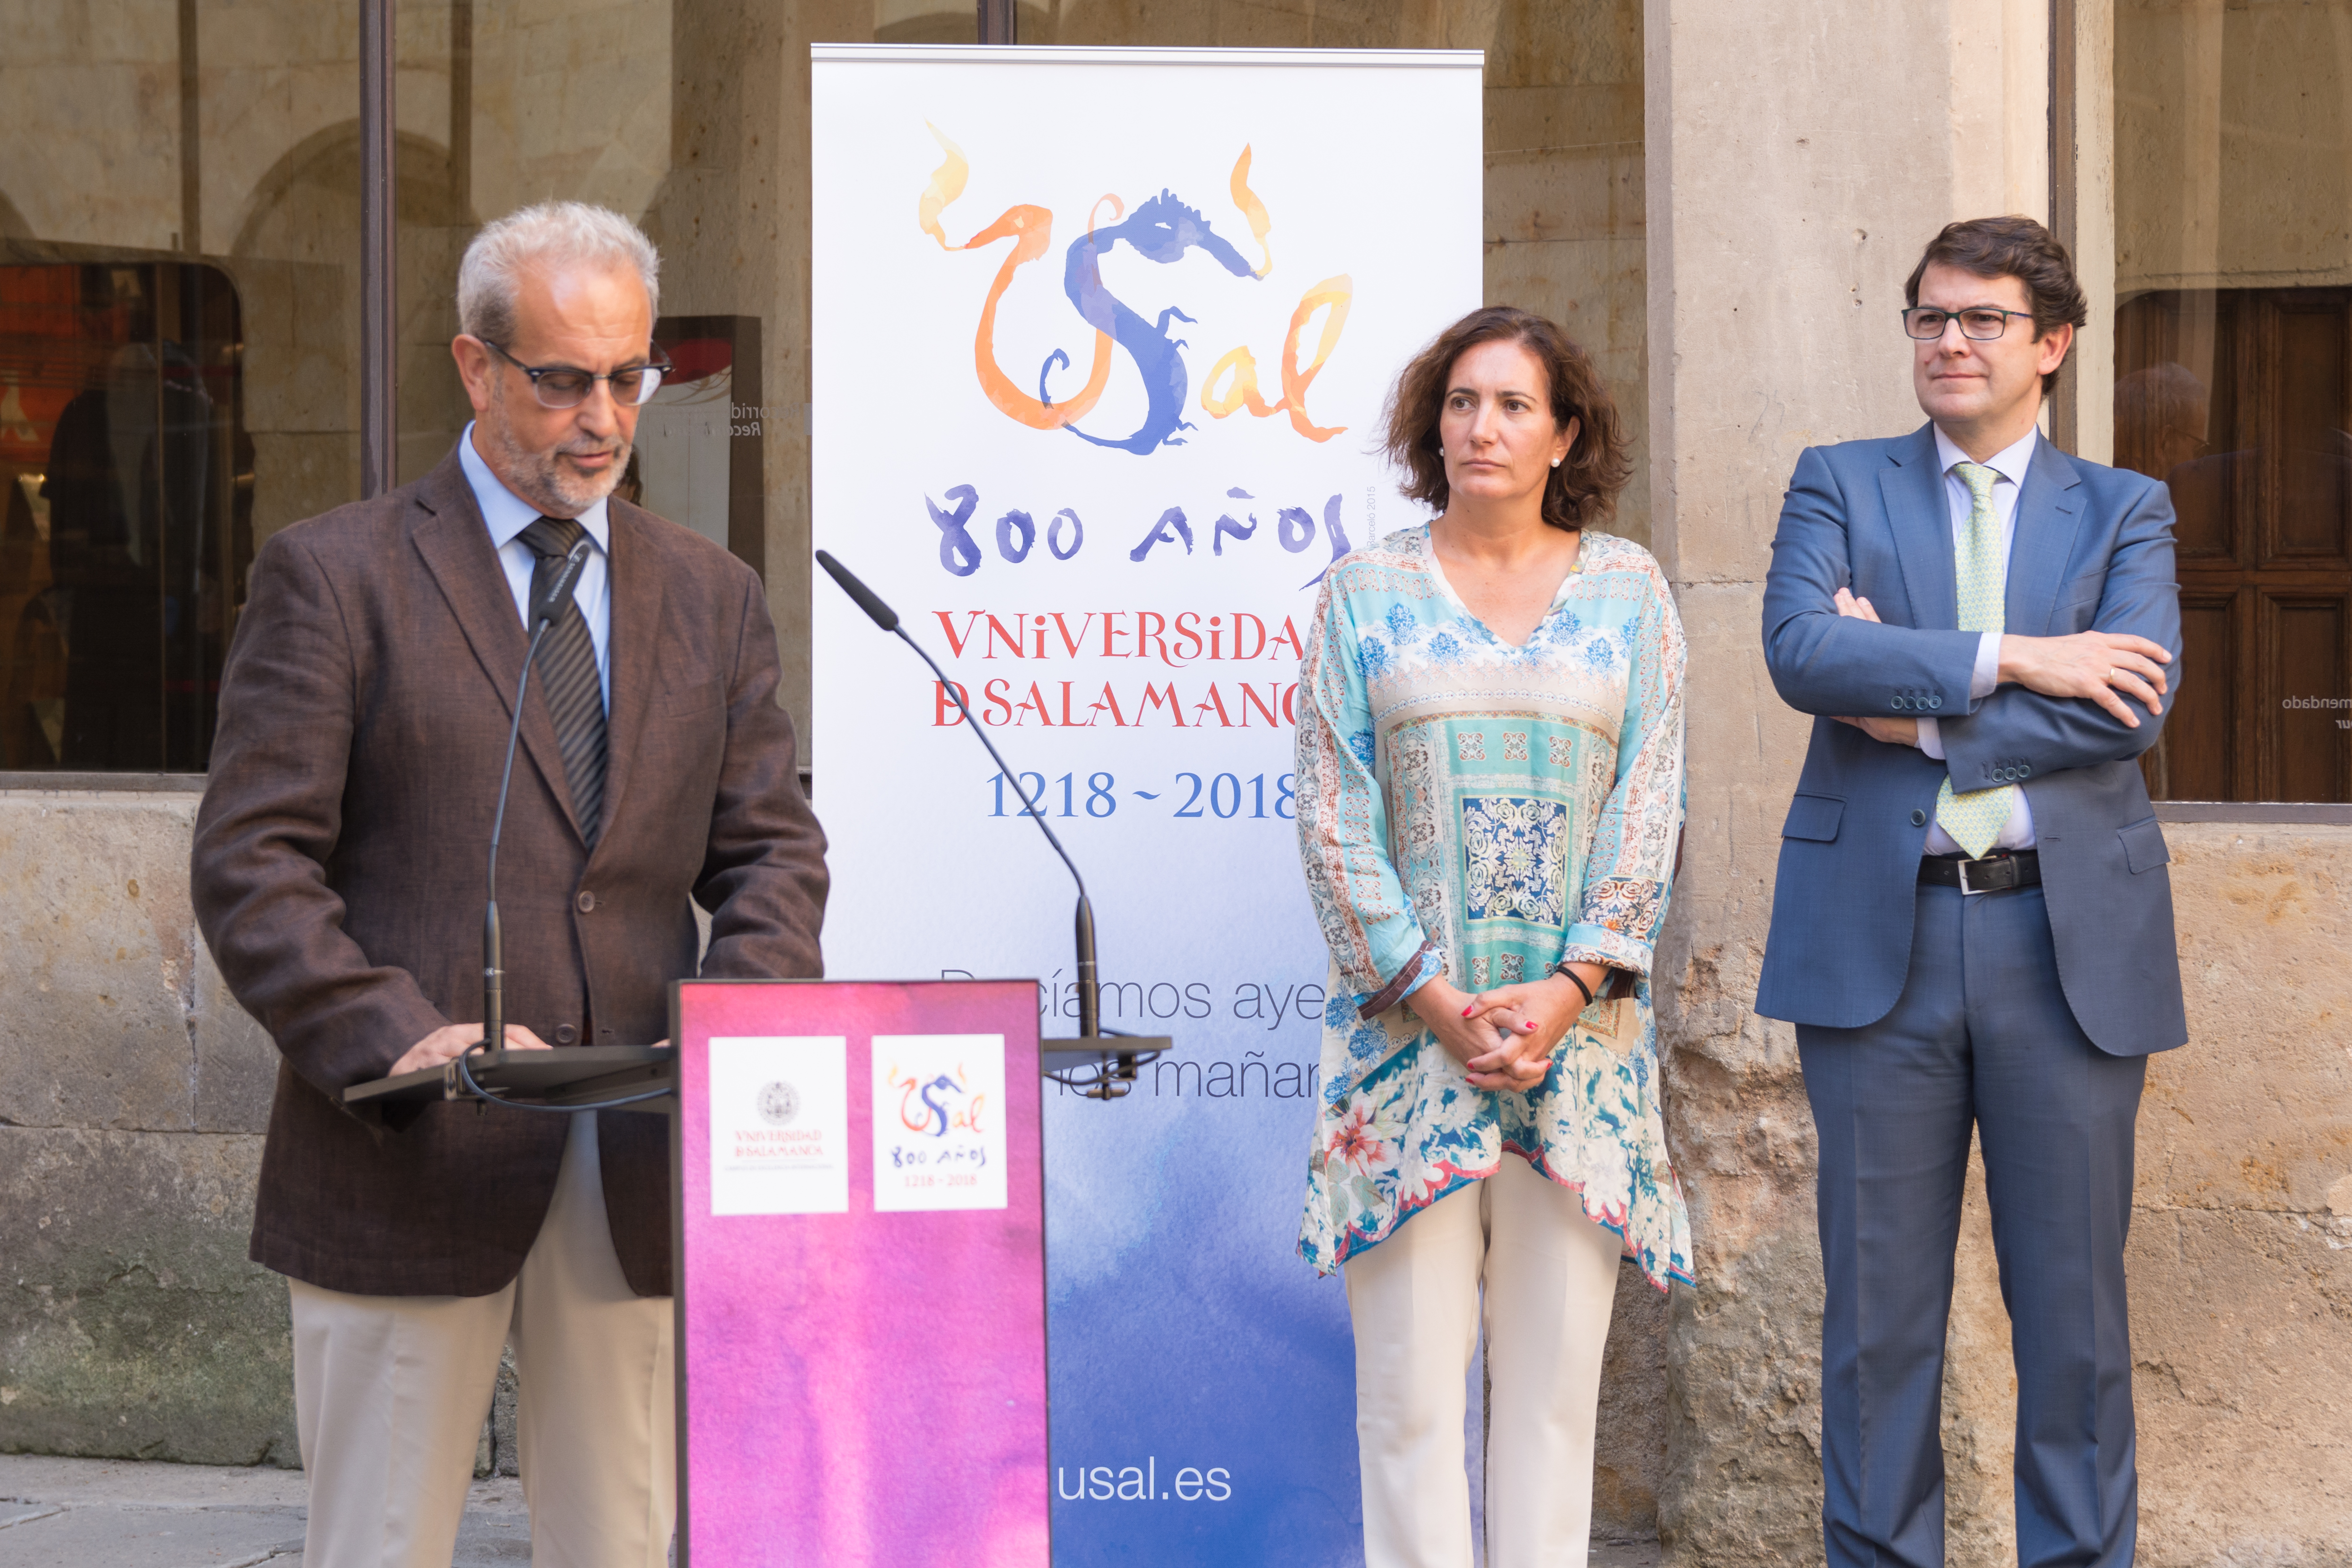 La consejera de Cultura y el rector de la Universidad de Salamanca presentan los trabajos de restauración de la Fachada Rica, enmarcados en las actuaciones del VIII Centenario de la USAL